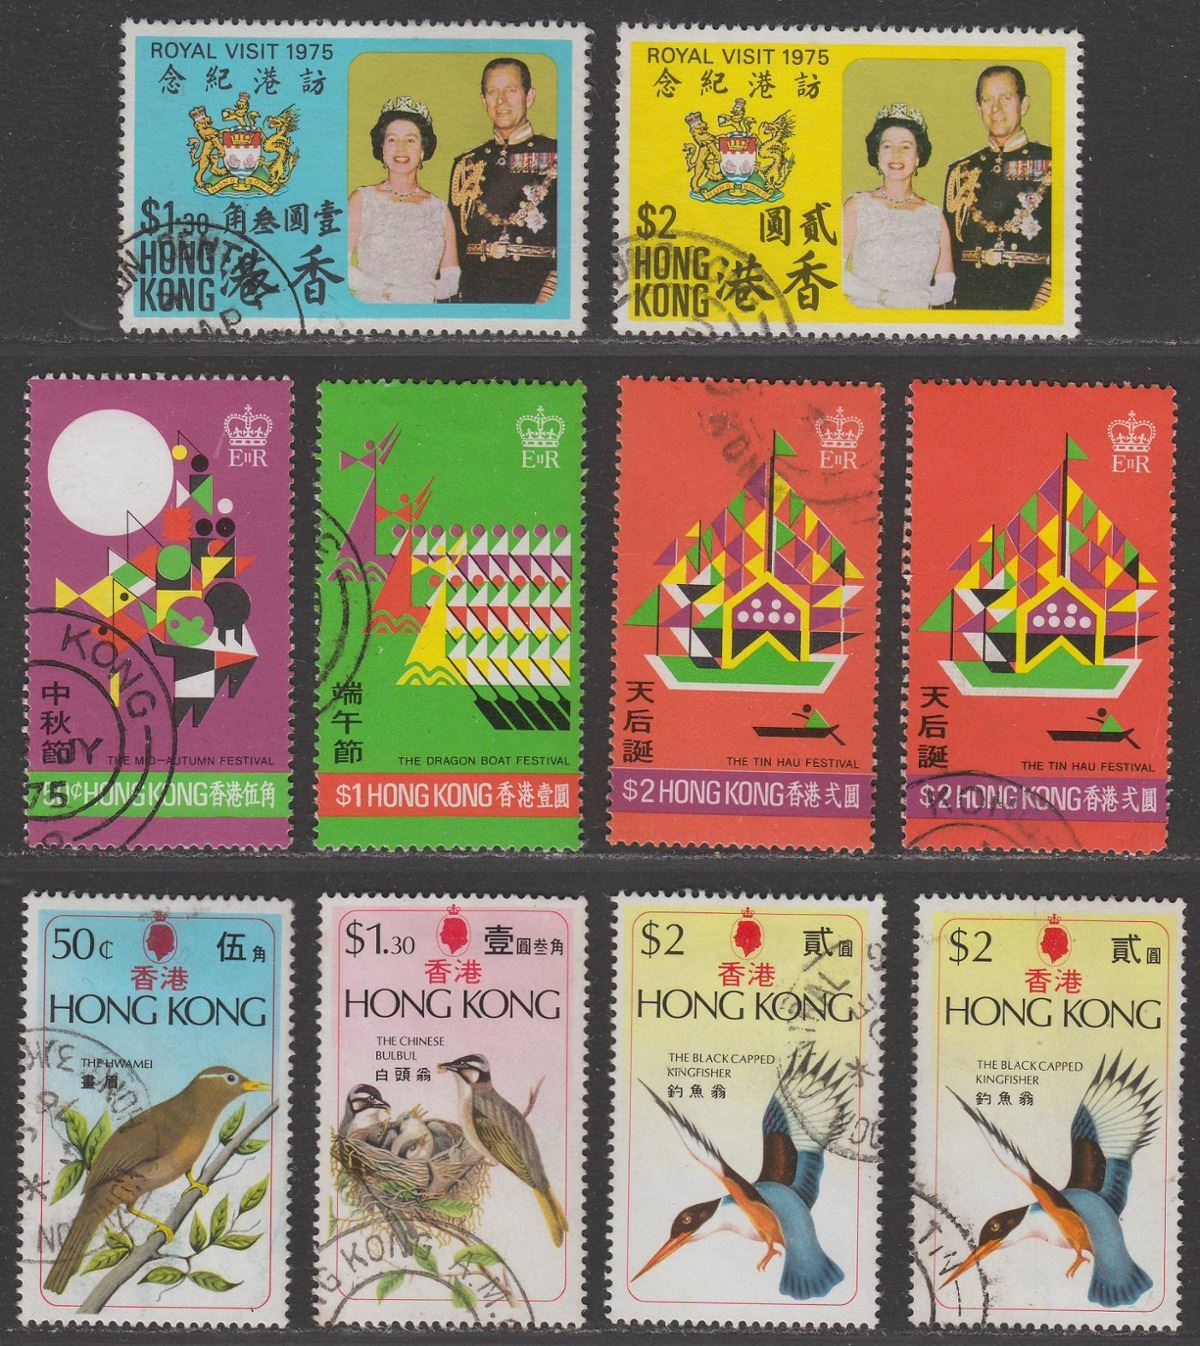 Hong Kong 1975 QEII Royal Visit $1.30, $2 / Festivals Set / Birds Set Used